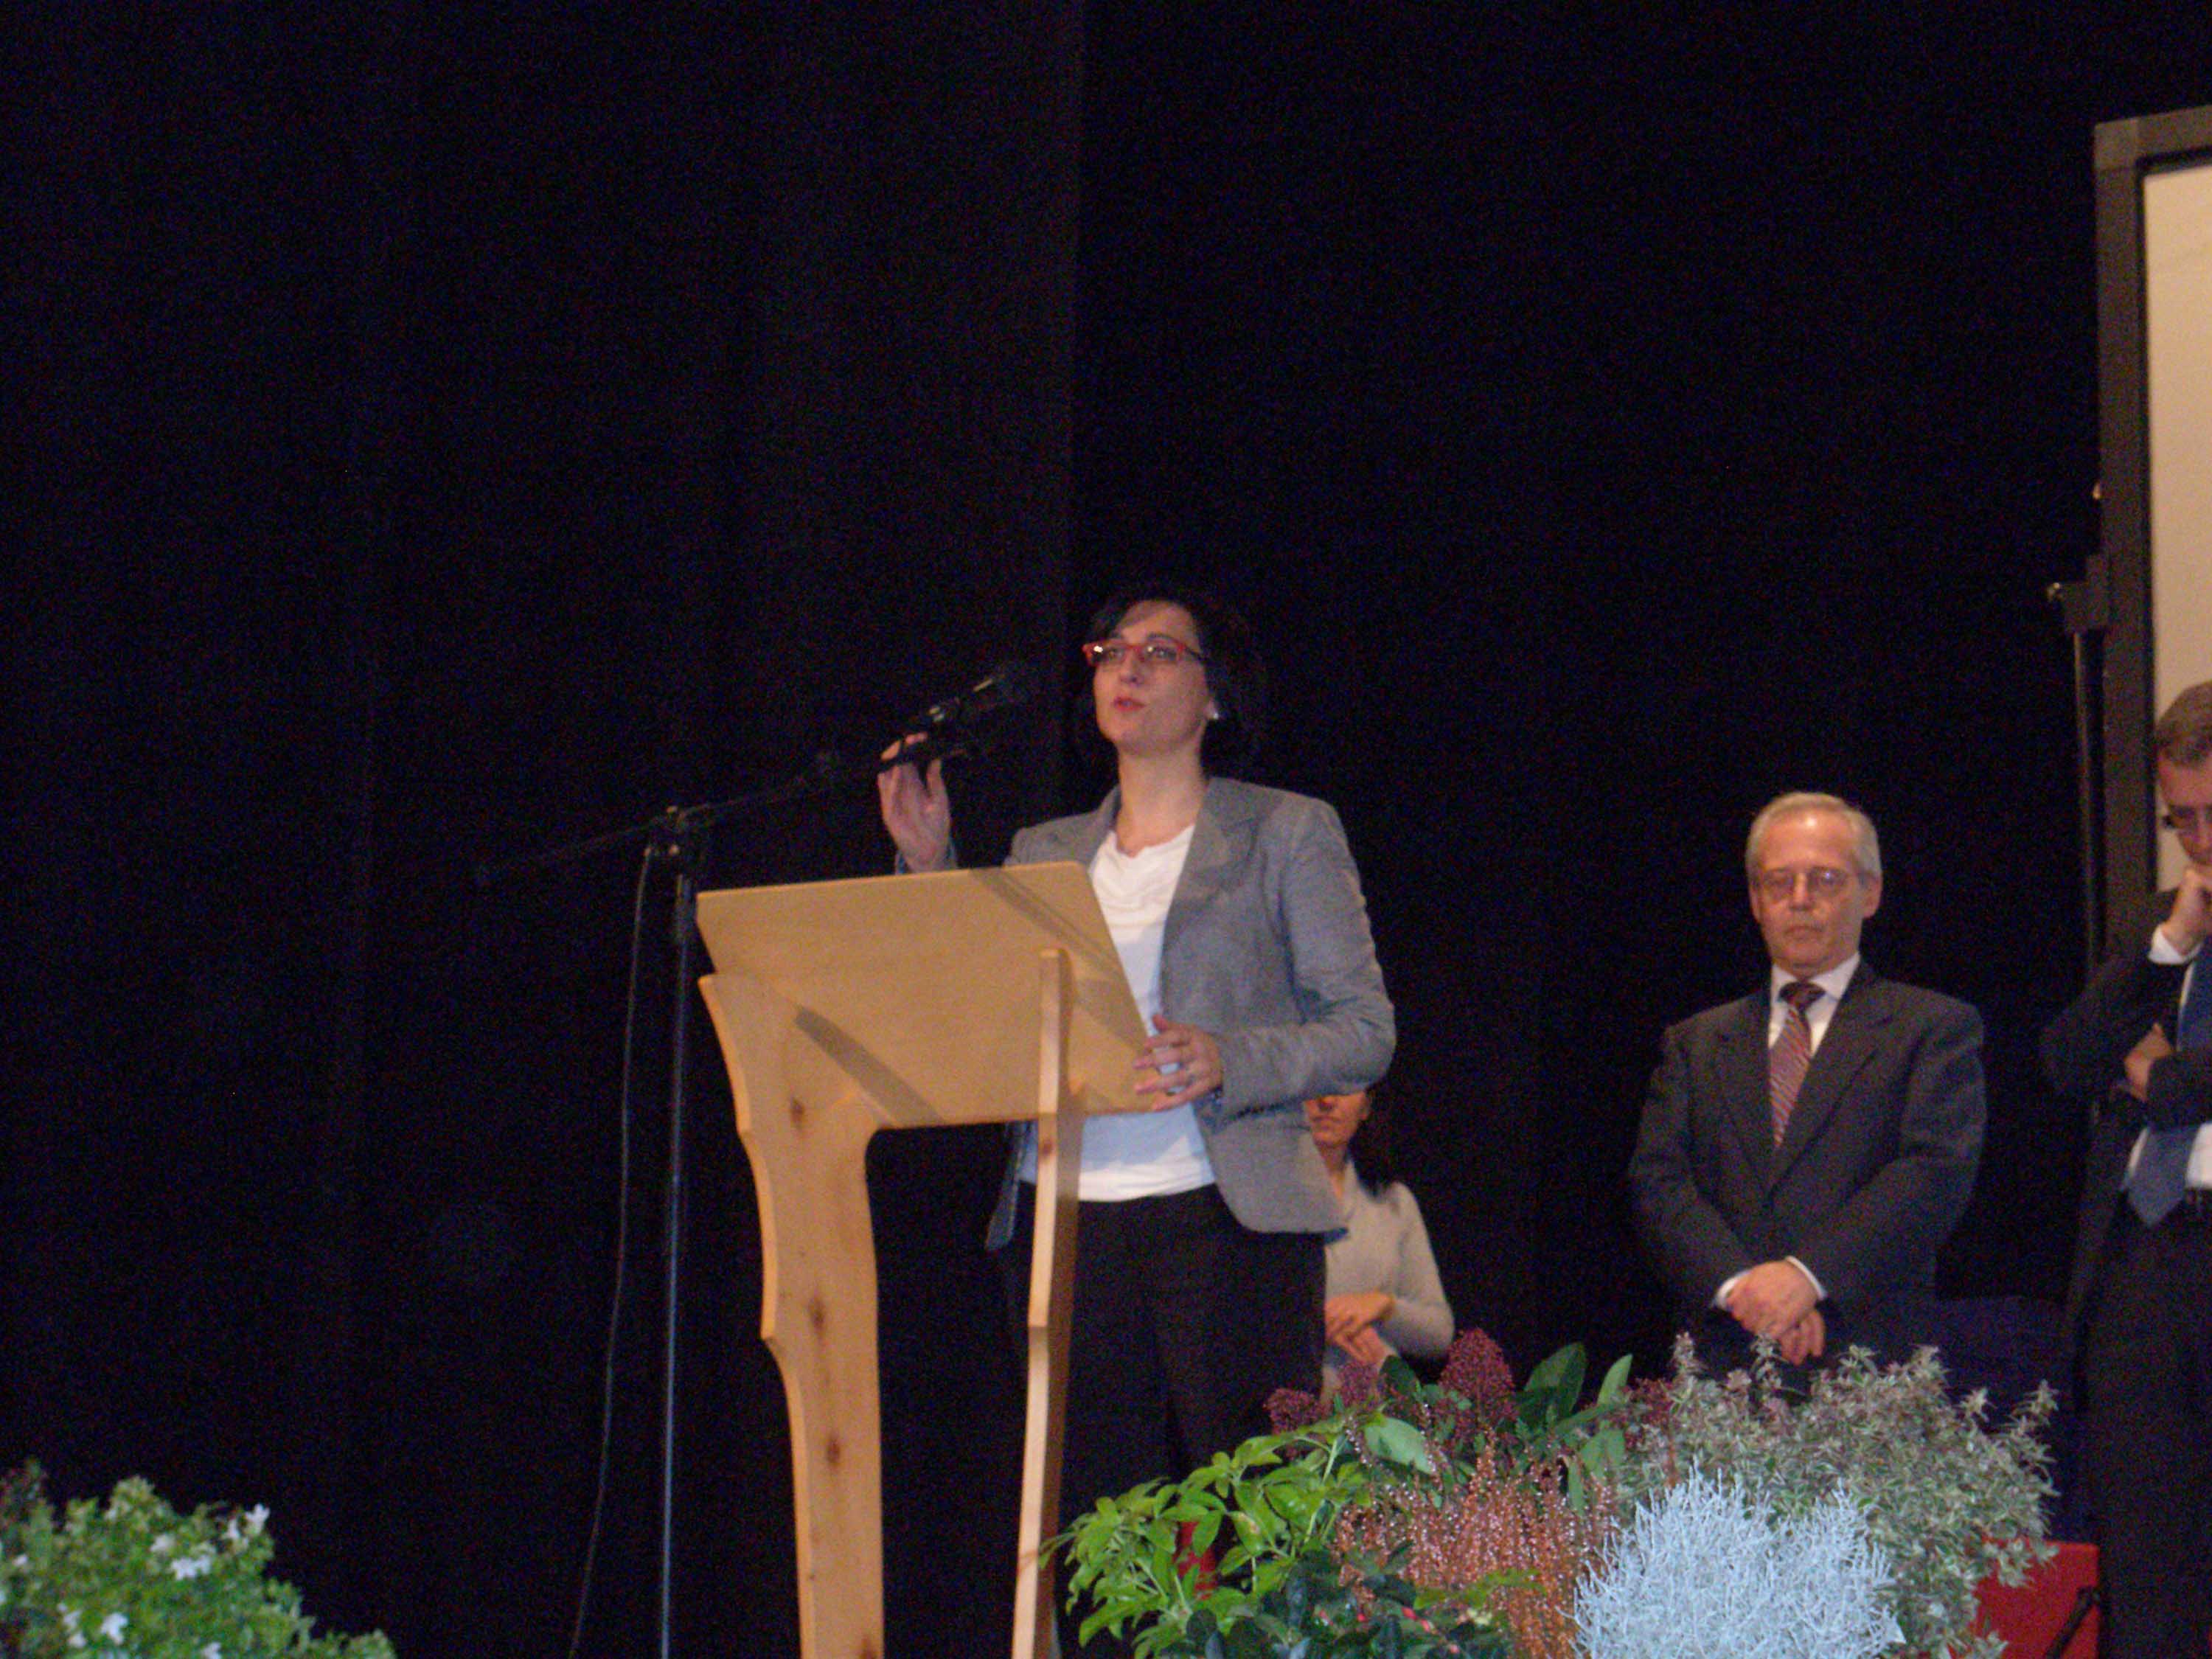 Sara Vito (Assessore regionale Ambiente ed Energia) interviene al congresso dell'ADVS-Associazione Donatori Volontari di Sangue di Gorizia. (Grado 20/10/13)